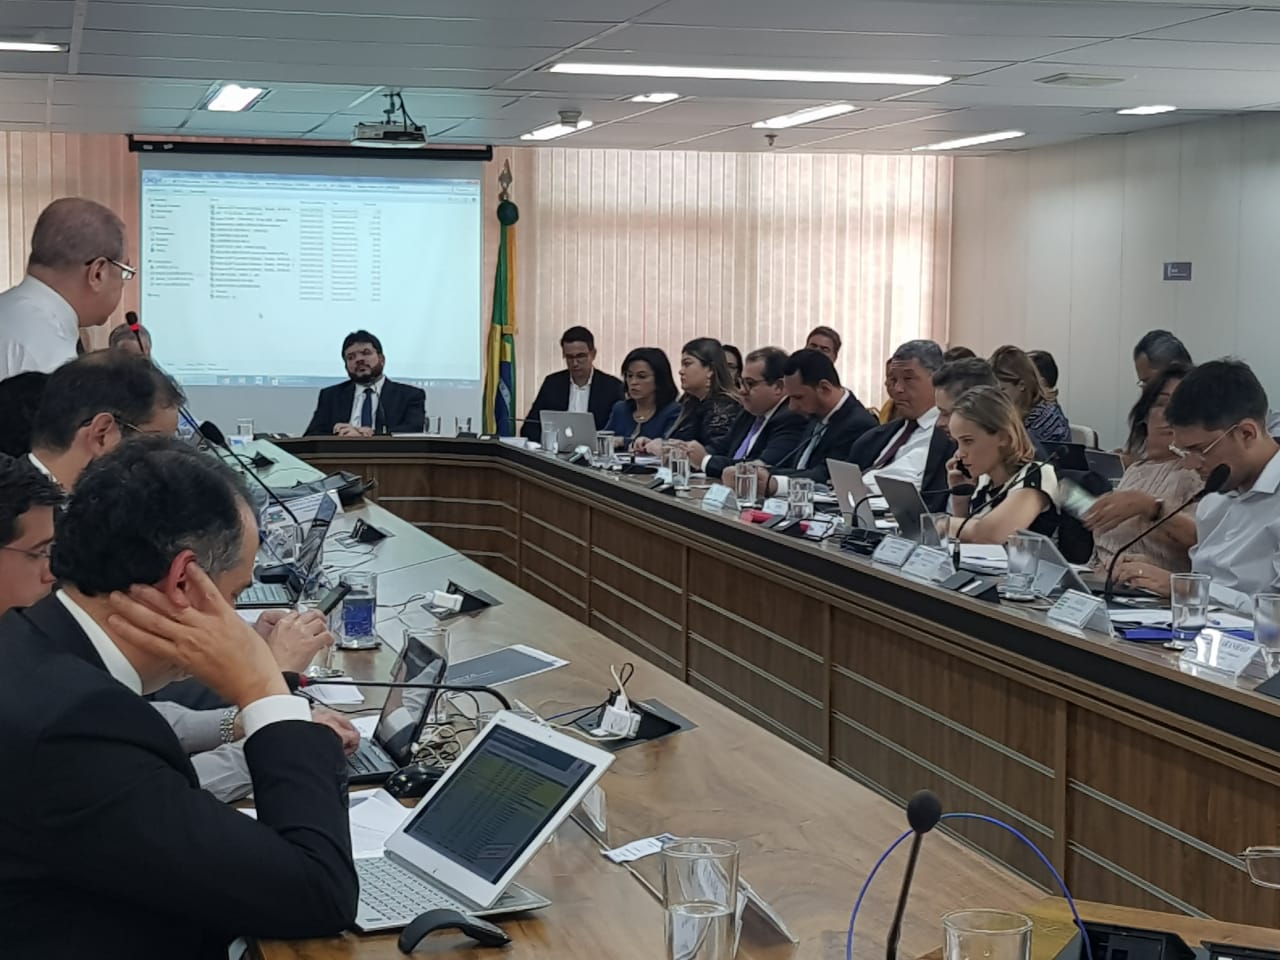 A eleição ocorreu nesta quinta-feira (04), no salão principal da Secretaria Executiva do Conselho Nacional de Políticas Fazendárias (Confaz), em Brasília  